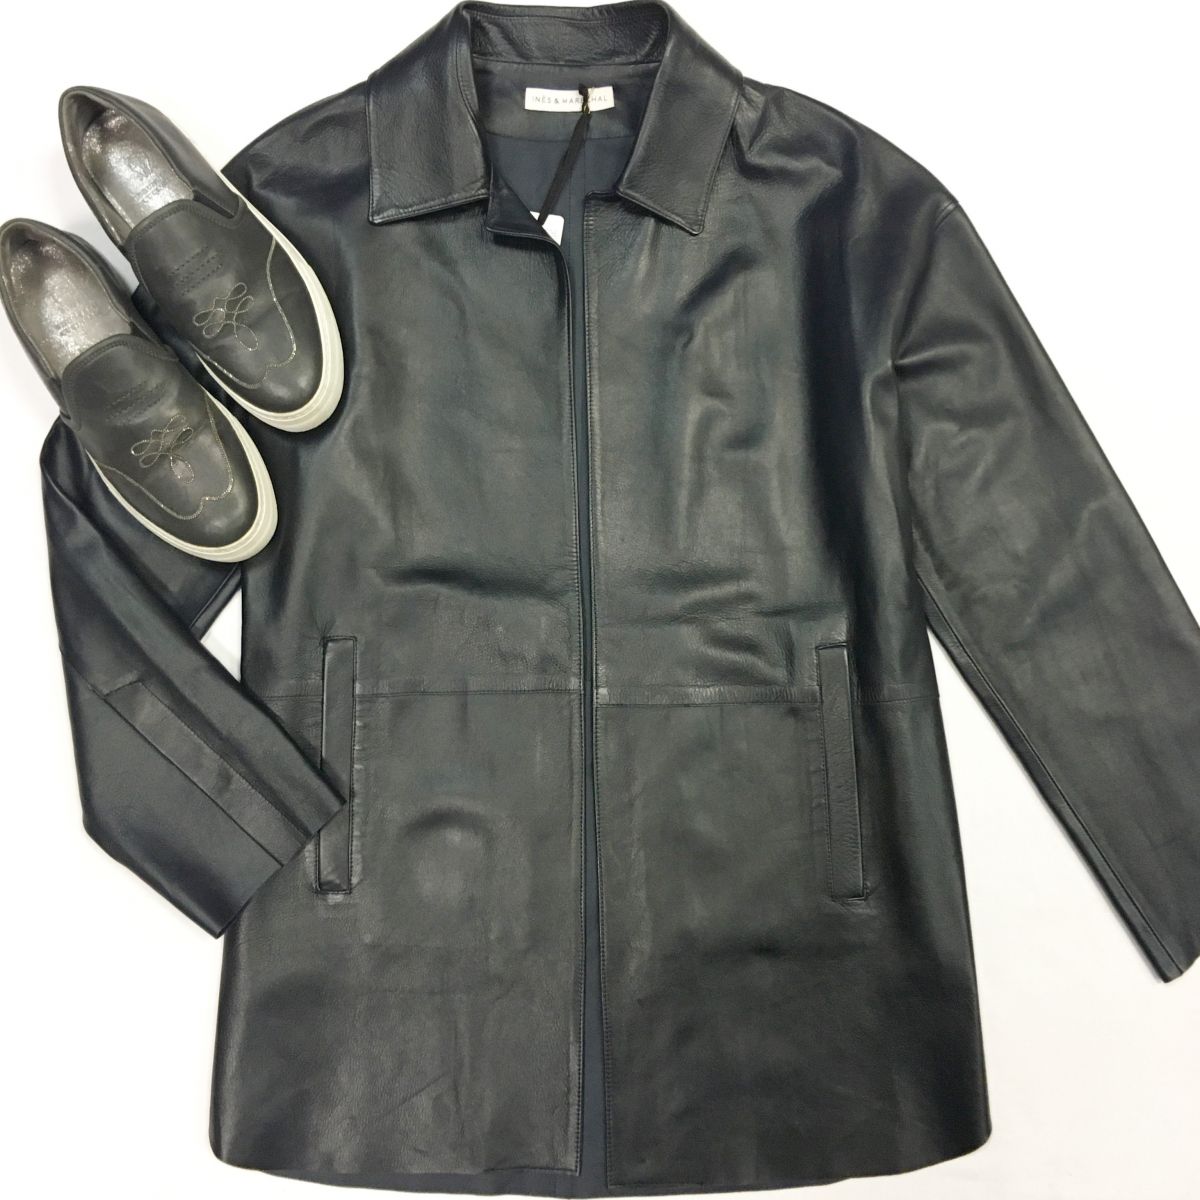 Куртка/кожа Ines Marechale размер 36 цена 46 155 руб Слипоны Brunello Cucinelli размер 38 цена 10 770 руб